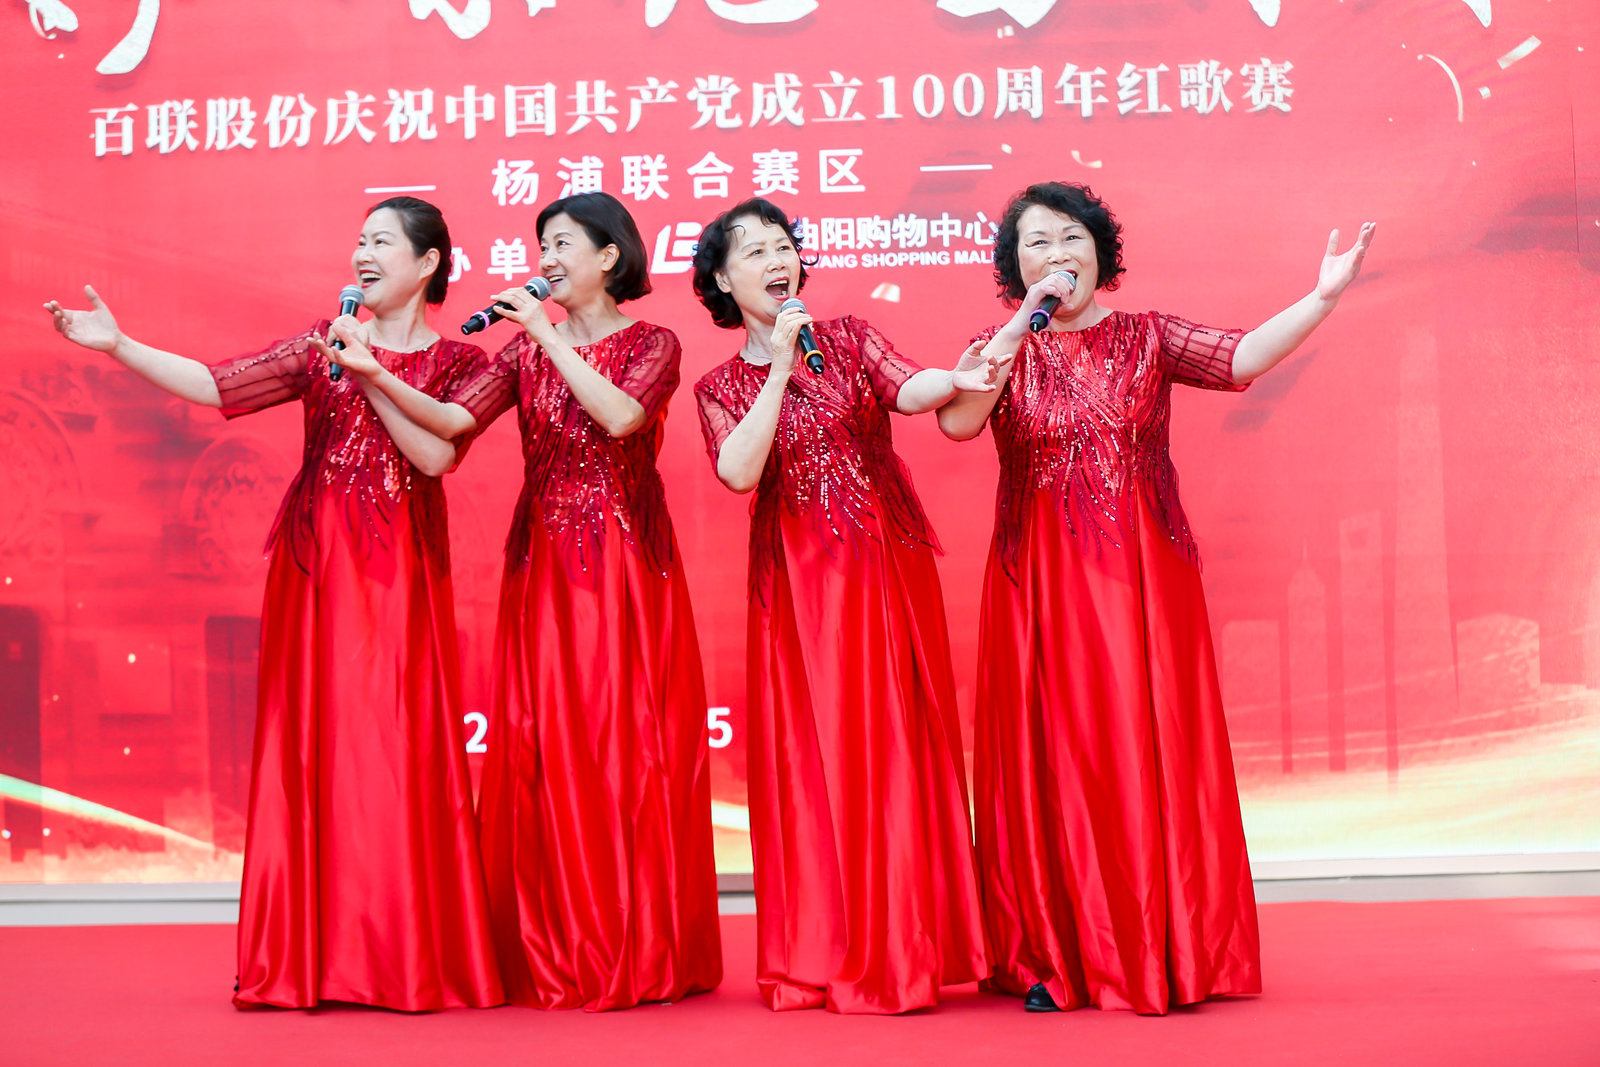 紅歌賽 | 百聯股份楊浦聯合賽區“歌聲嘹亮唱百年”